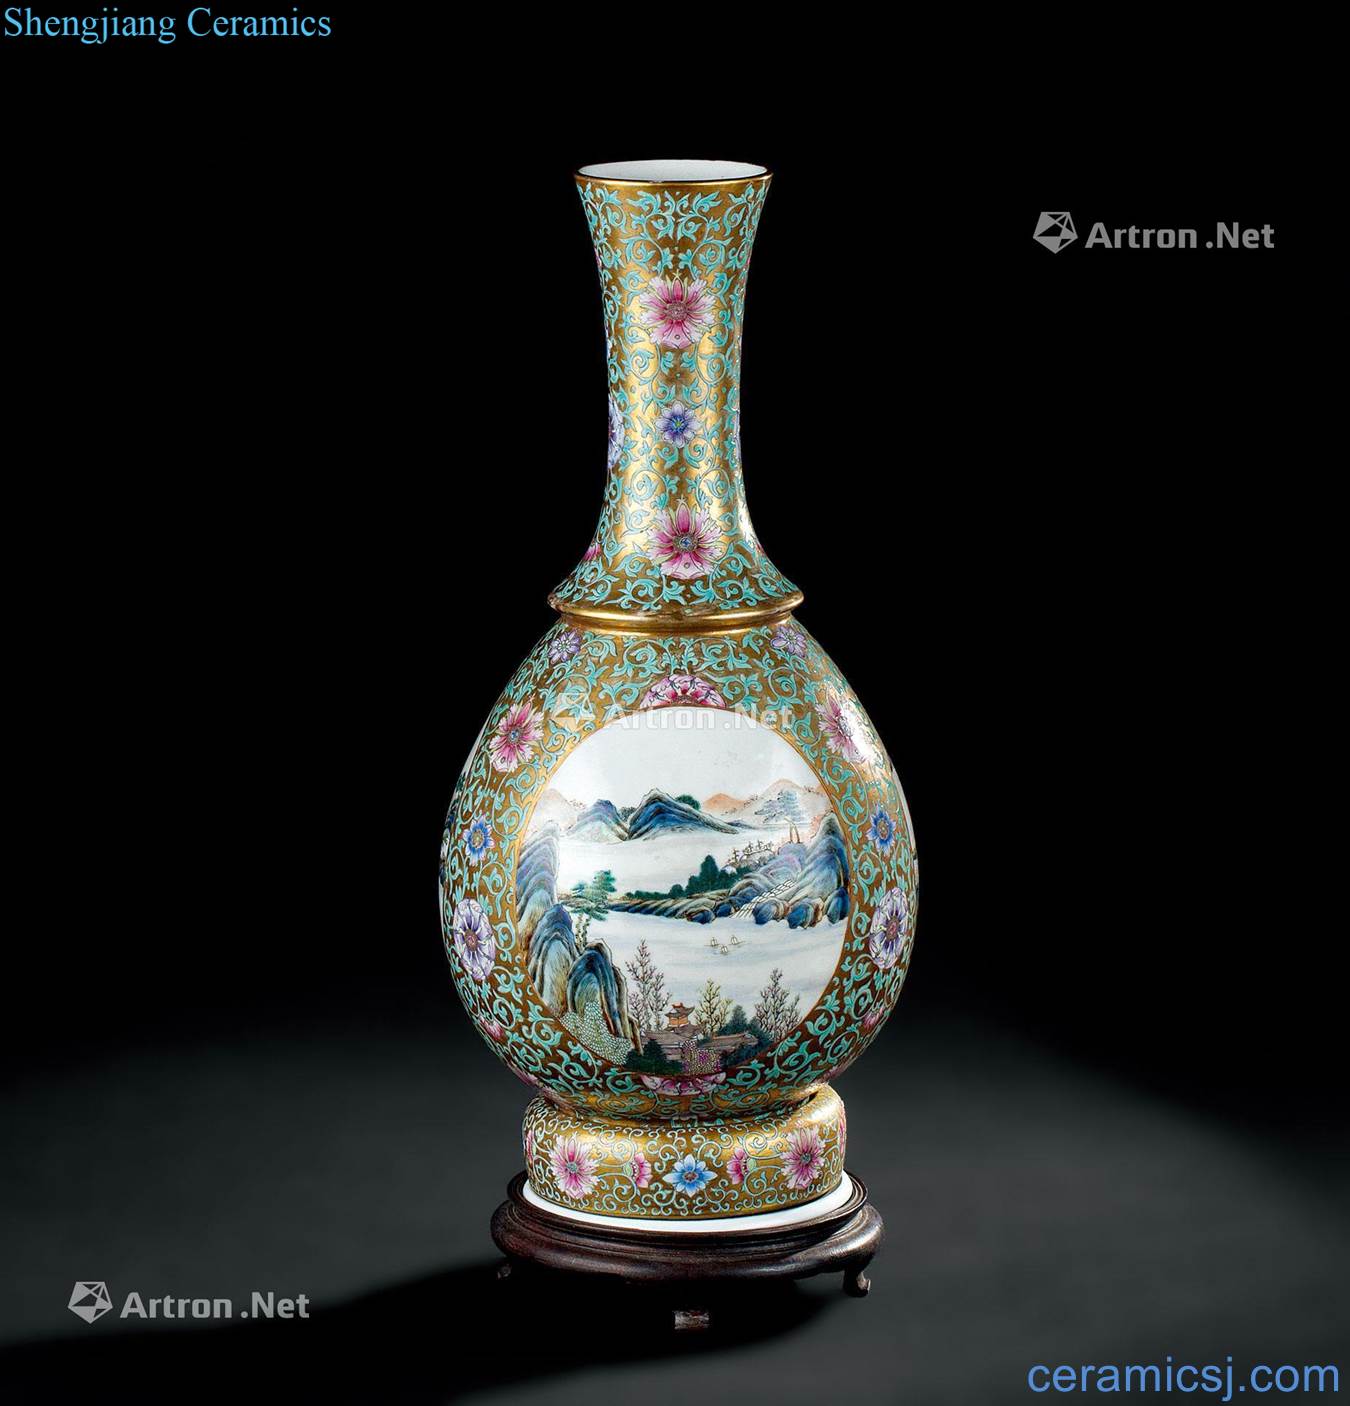 In the qing dynasty (1644-1911), jindi pastel turn heart bottle medallion landscape pattern